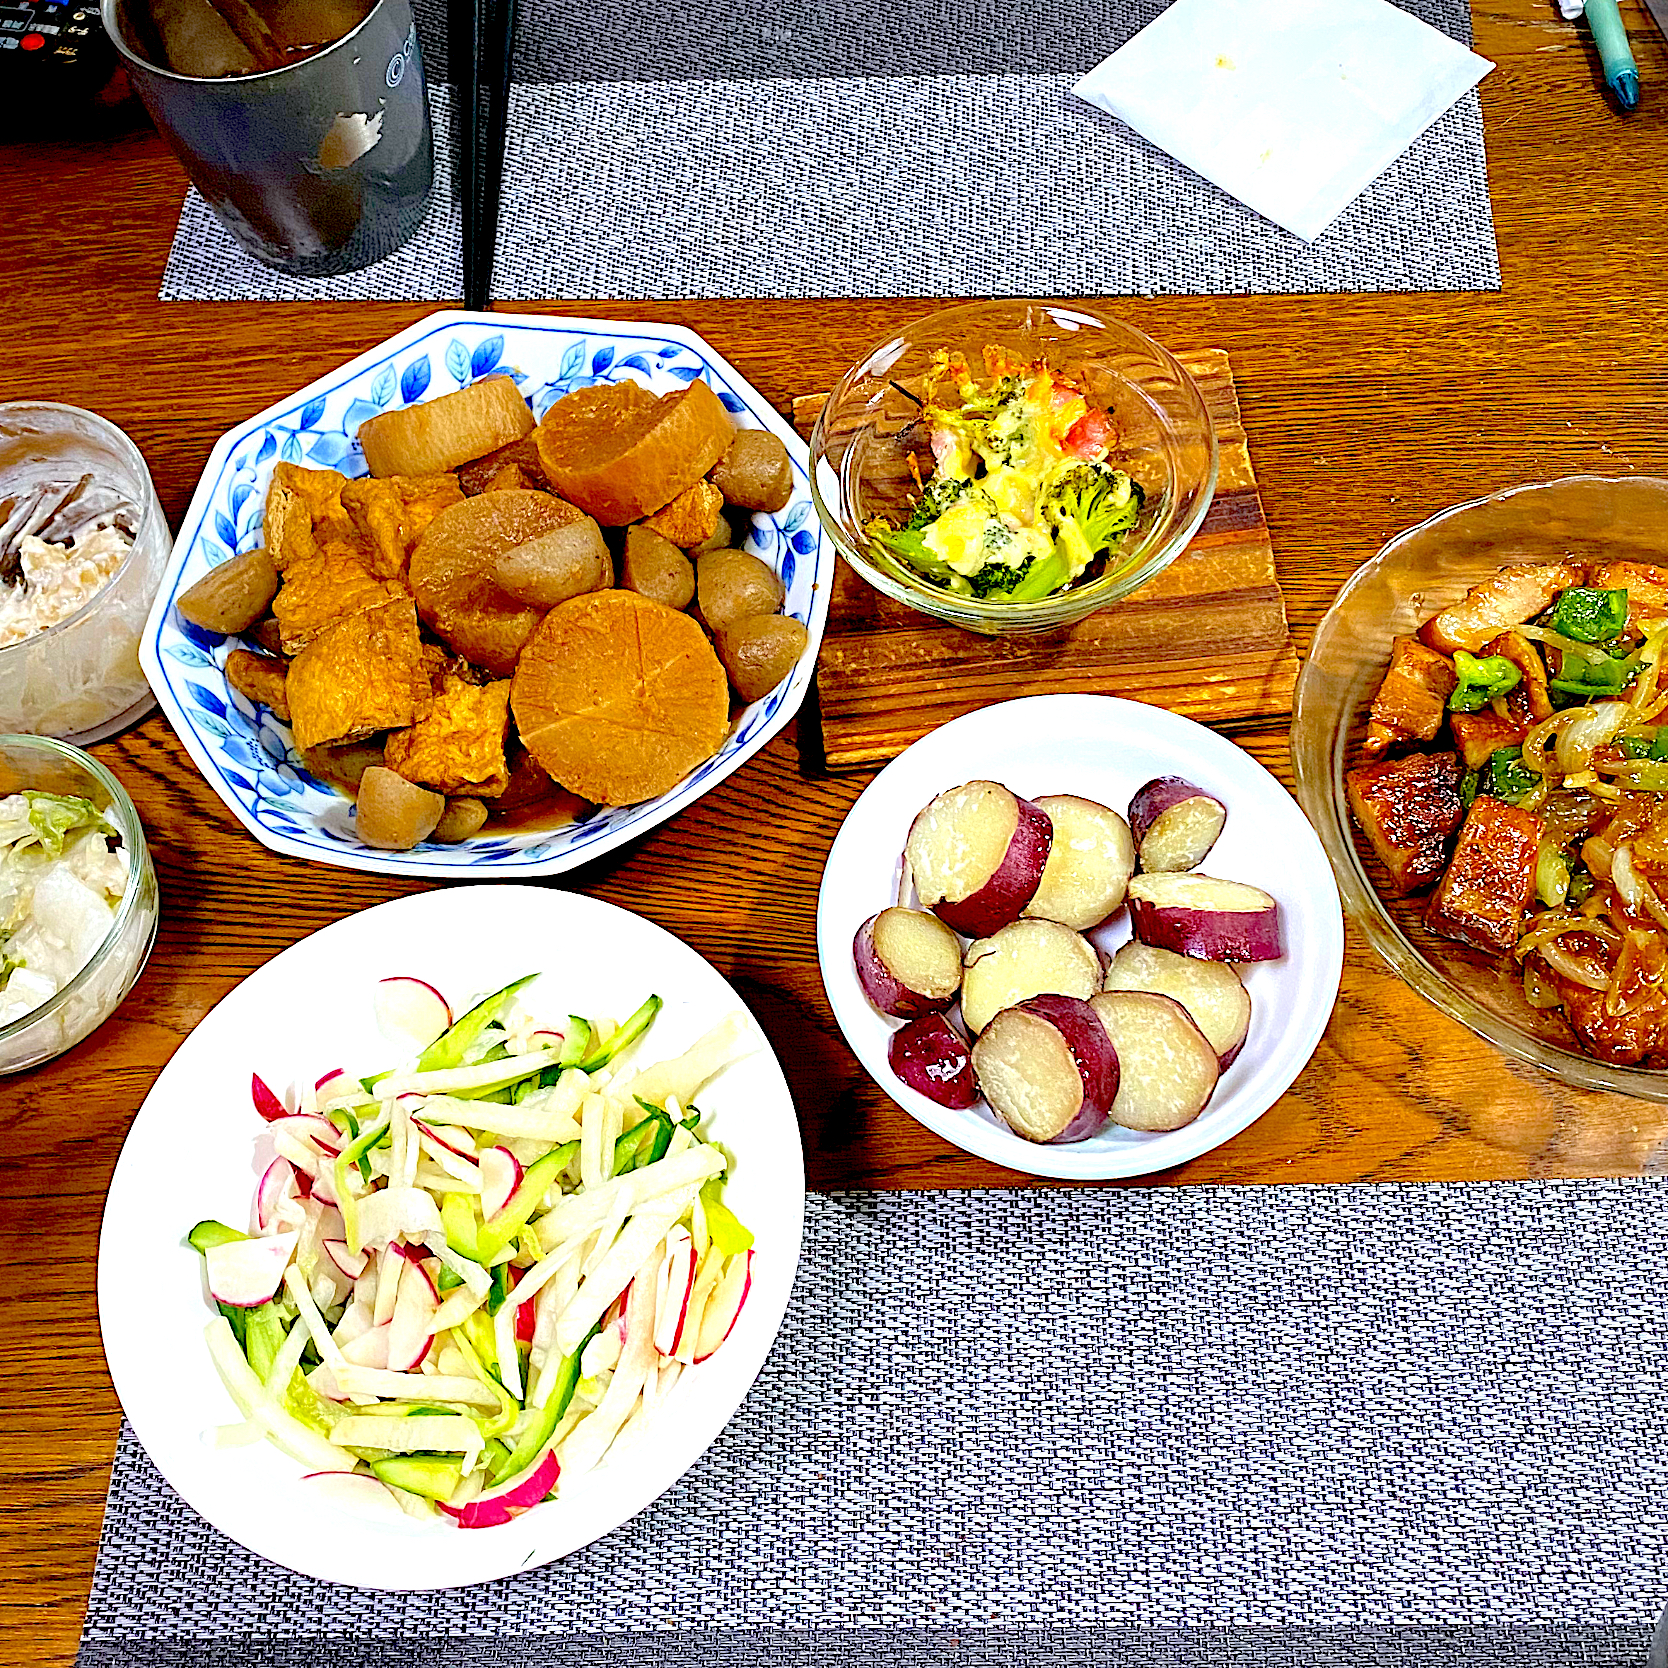 大根と蒟蒻と豚肉の味噌煮、玉ねぎ、ピーマンとスペアリブの炒め物、さつま芋の甘煮、大根サラダ